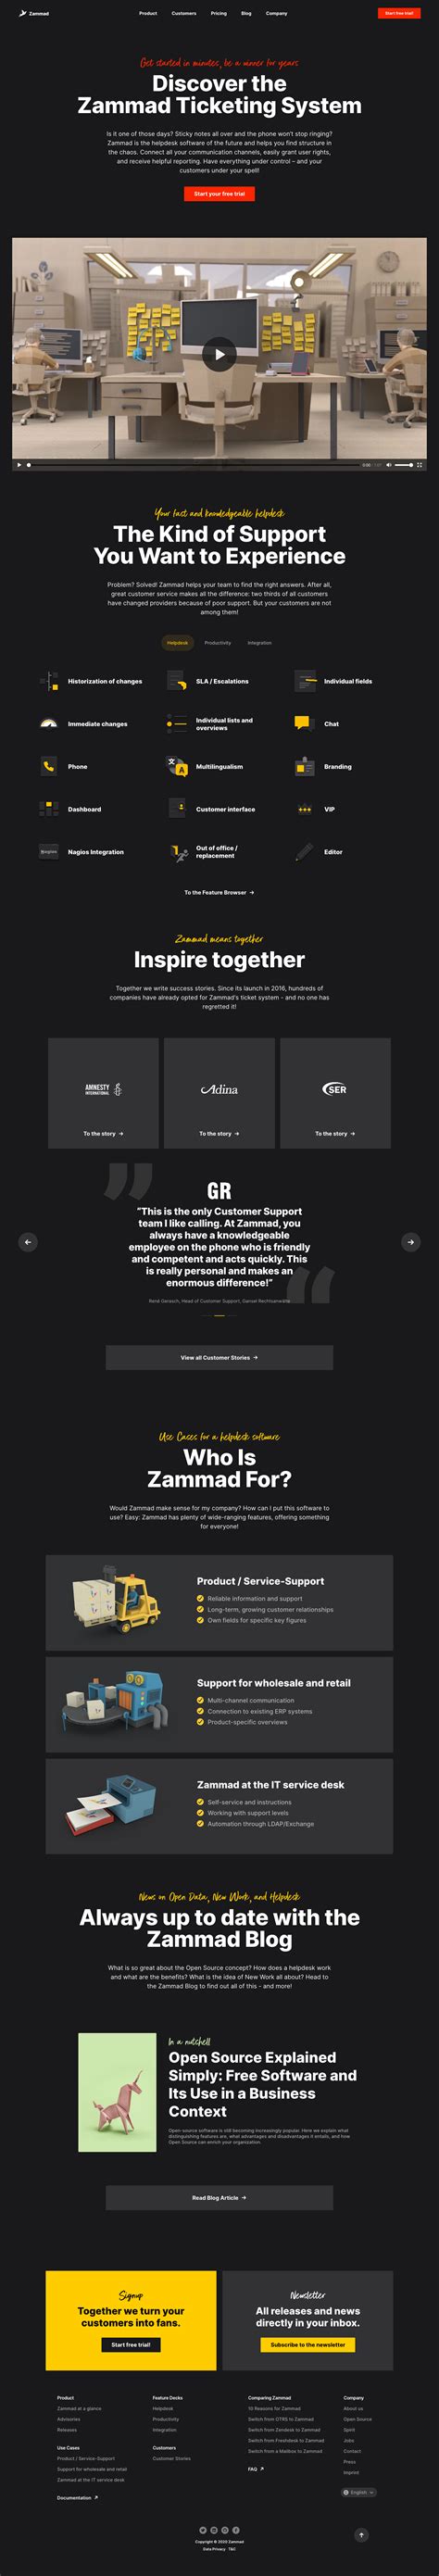 zammad landing page design inspiration lapa ninja